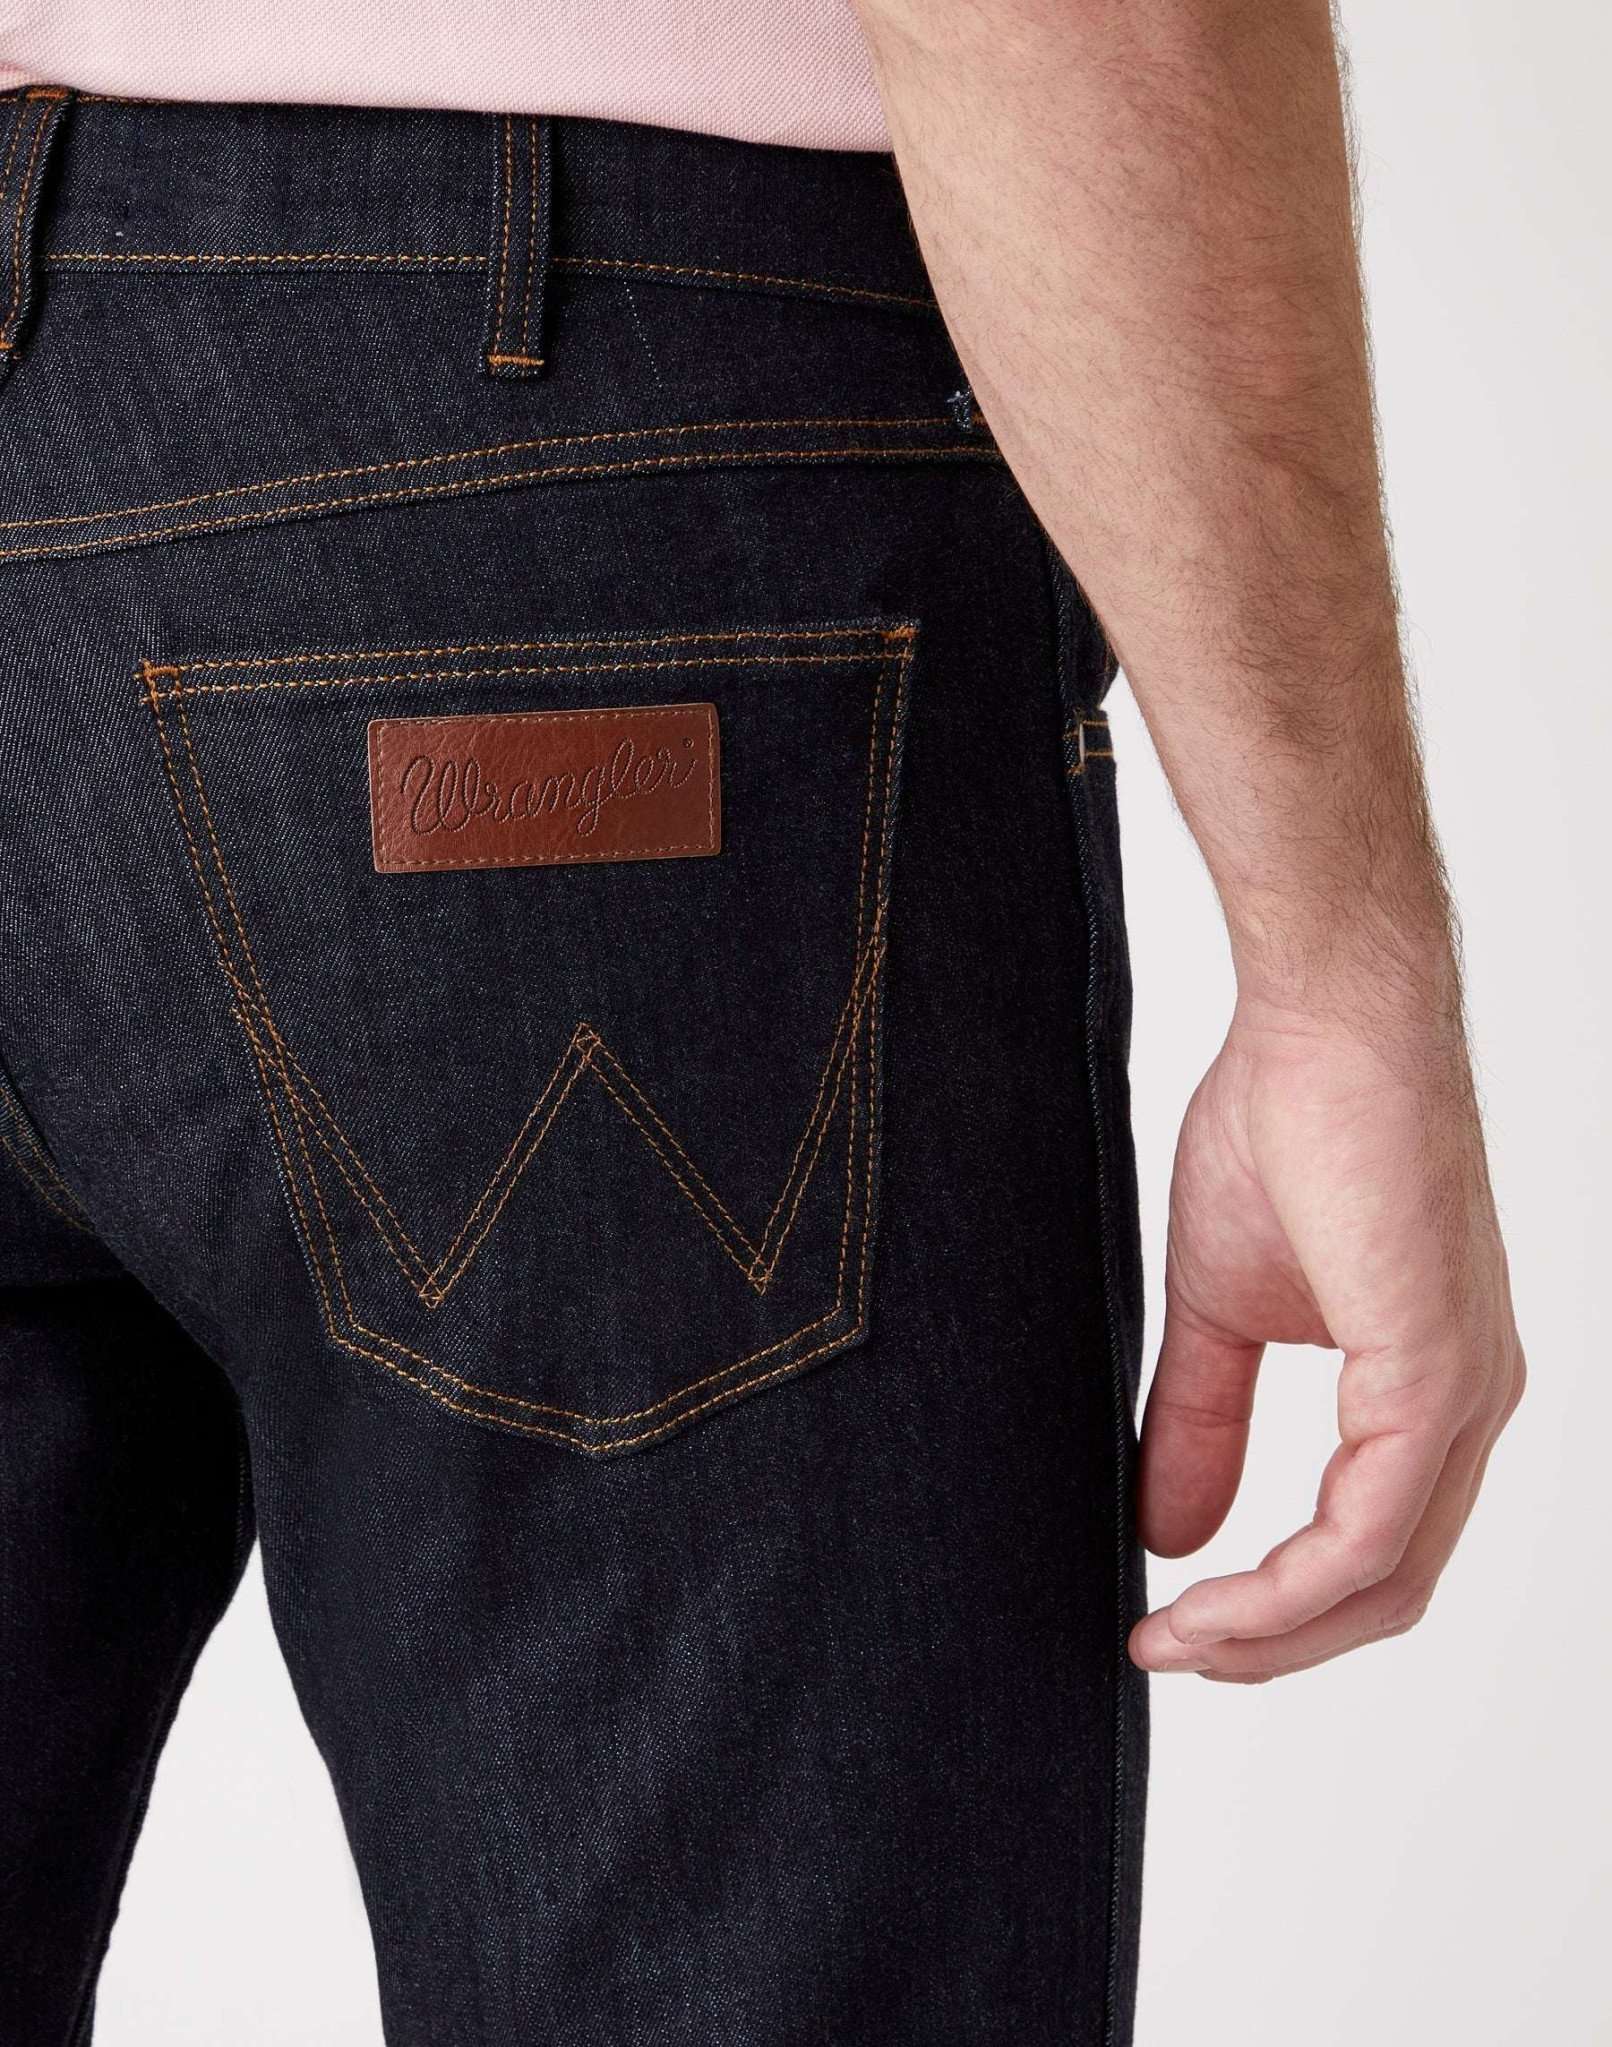 Greensboro Medium Stretch in Dark Rinse Jeans Wrangler   